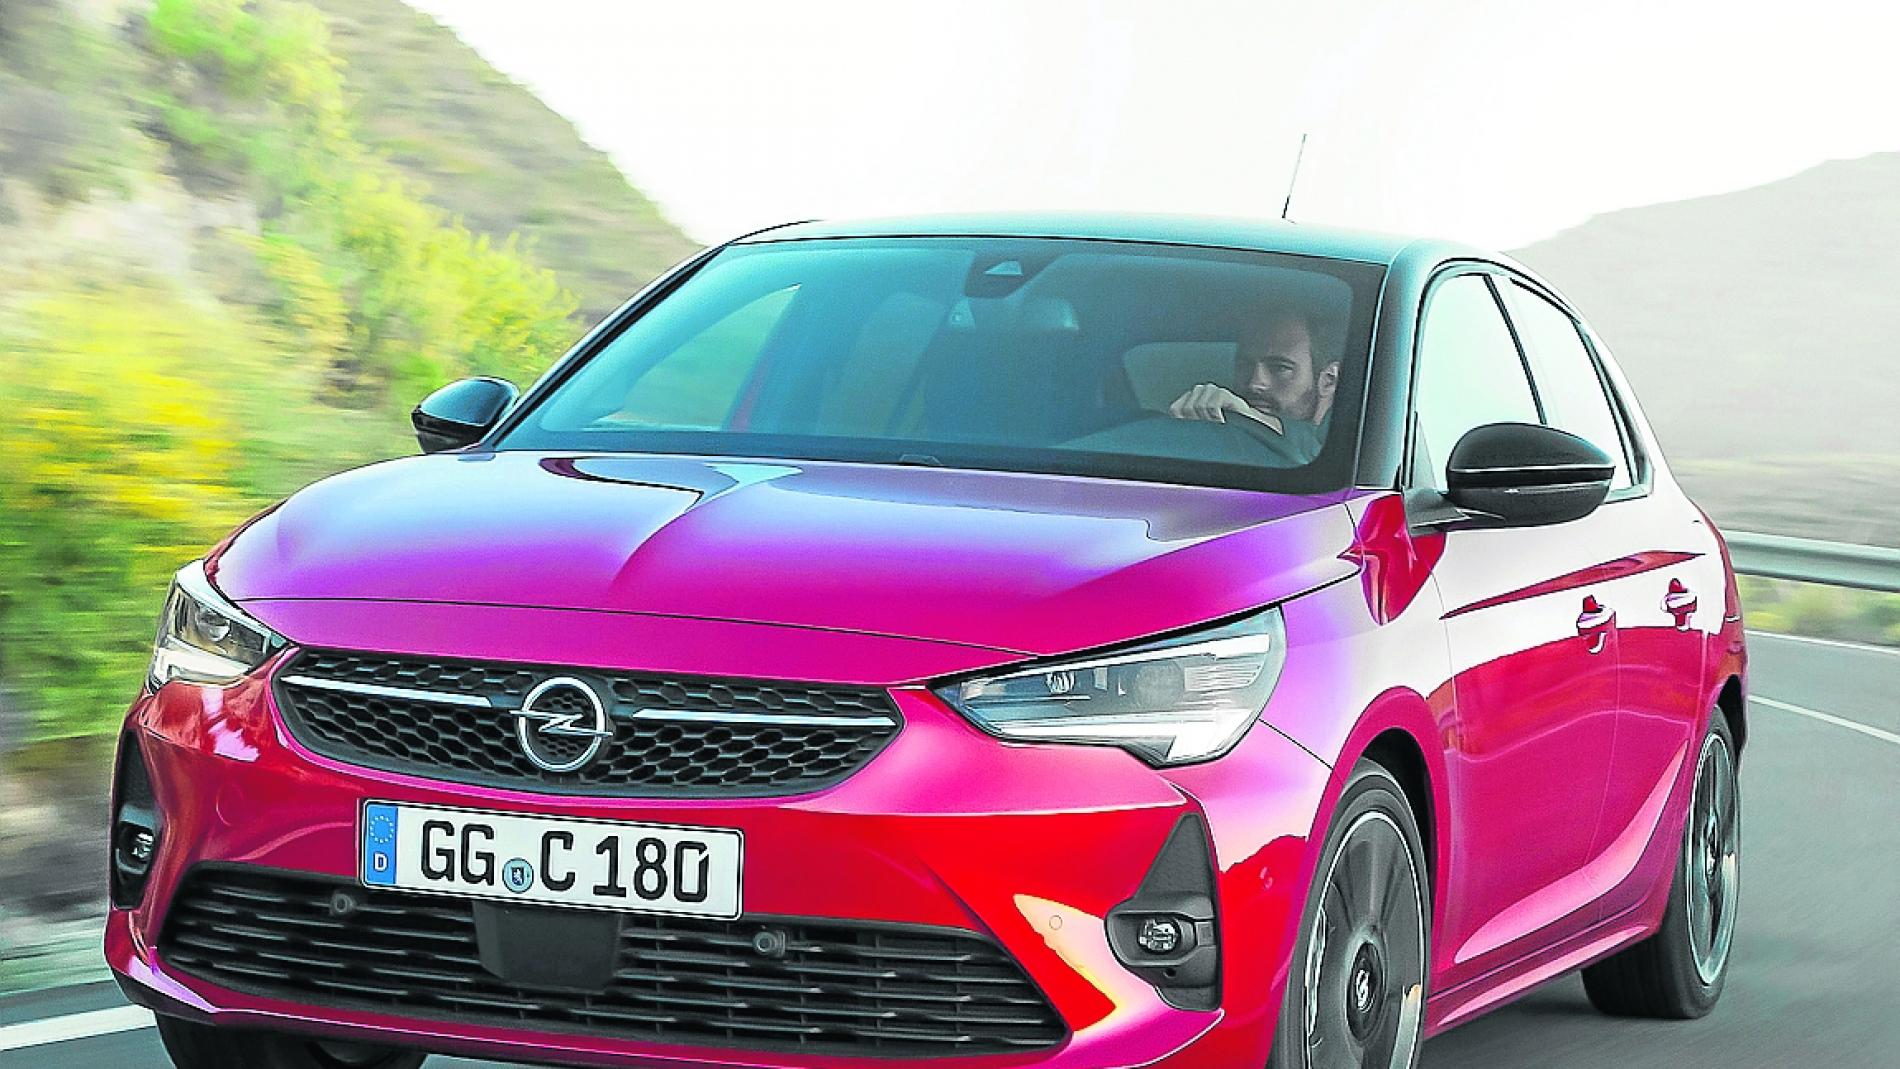 Opel vuelve a un gran salón del automóvil dos años después con el